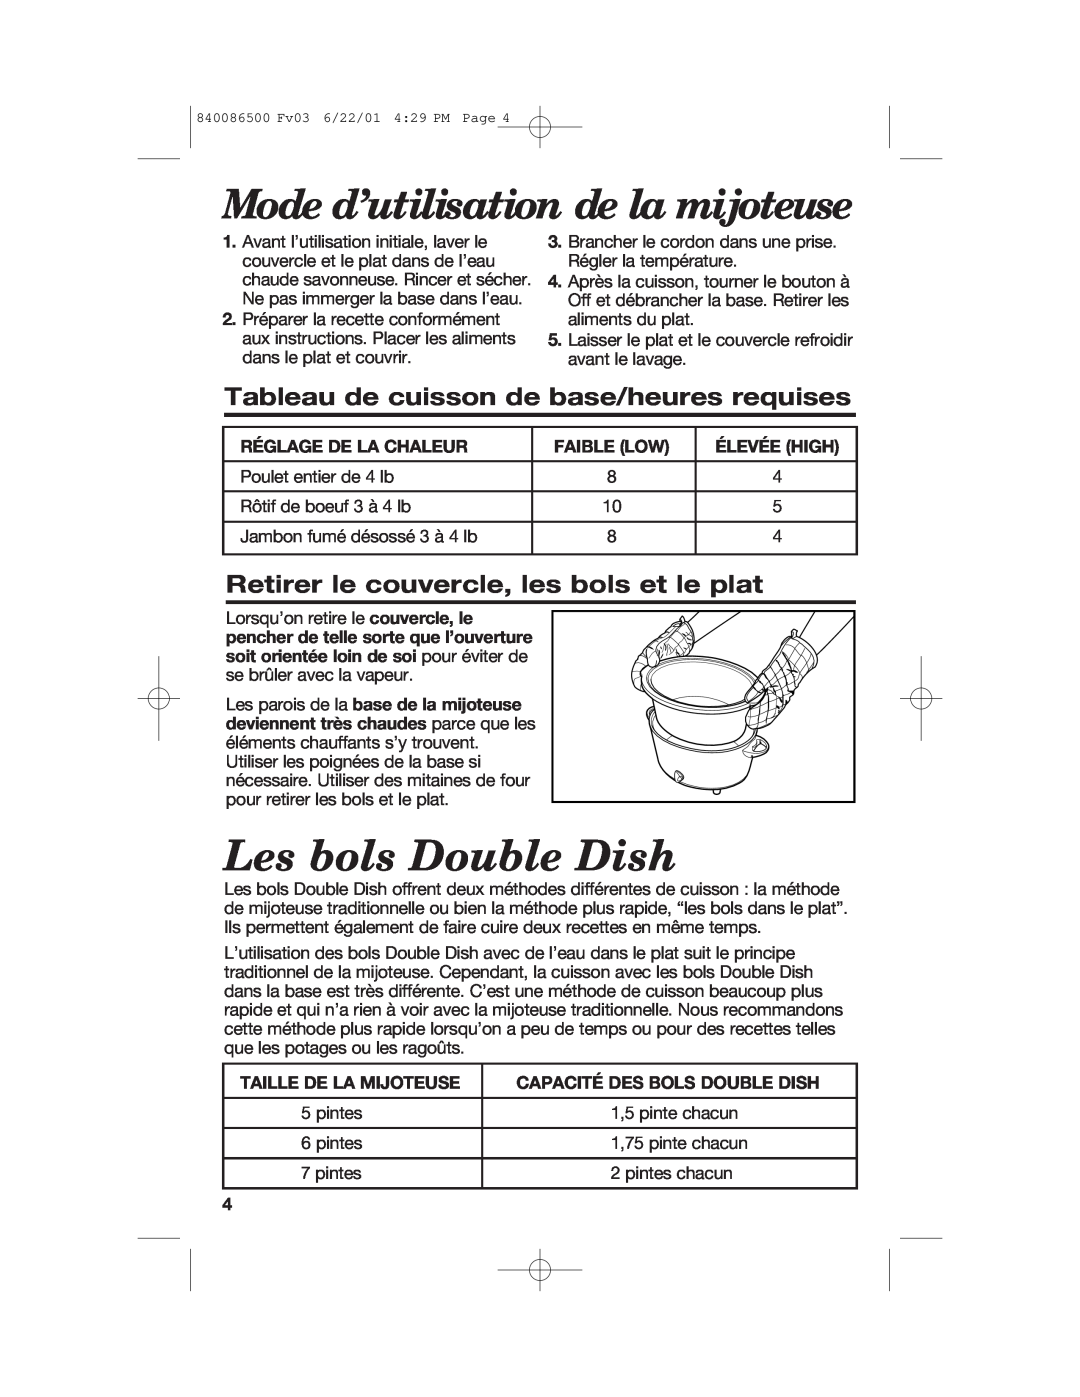 Hamilton Beach 33158 Les bols Double Dish, Tableau de cuisson de base/heures requises, Réglage De La Chaleur, Faible Low 